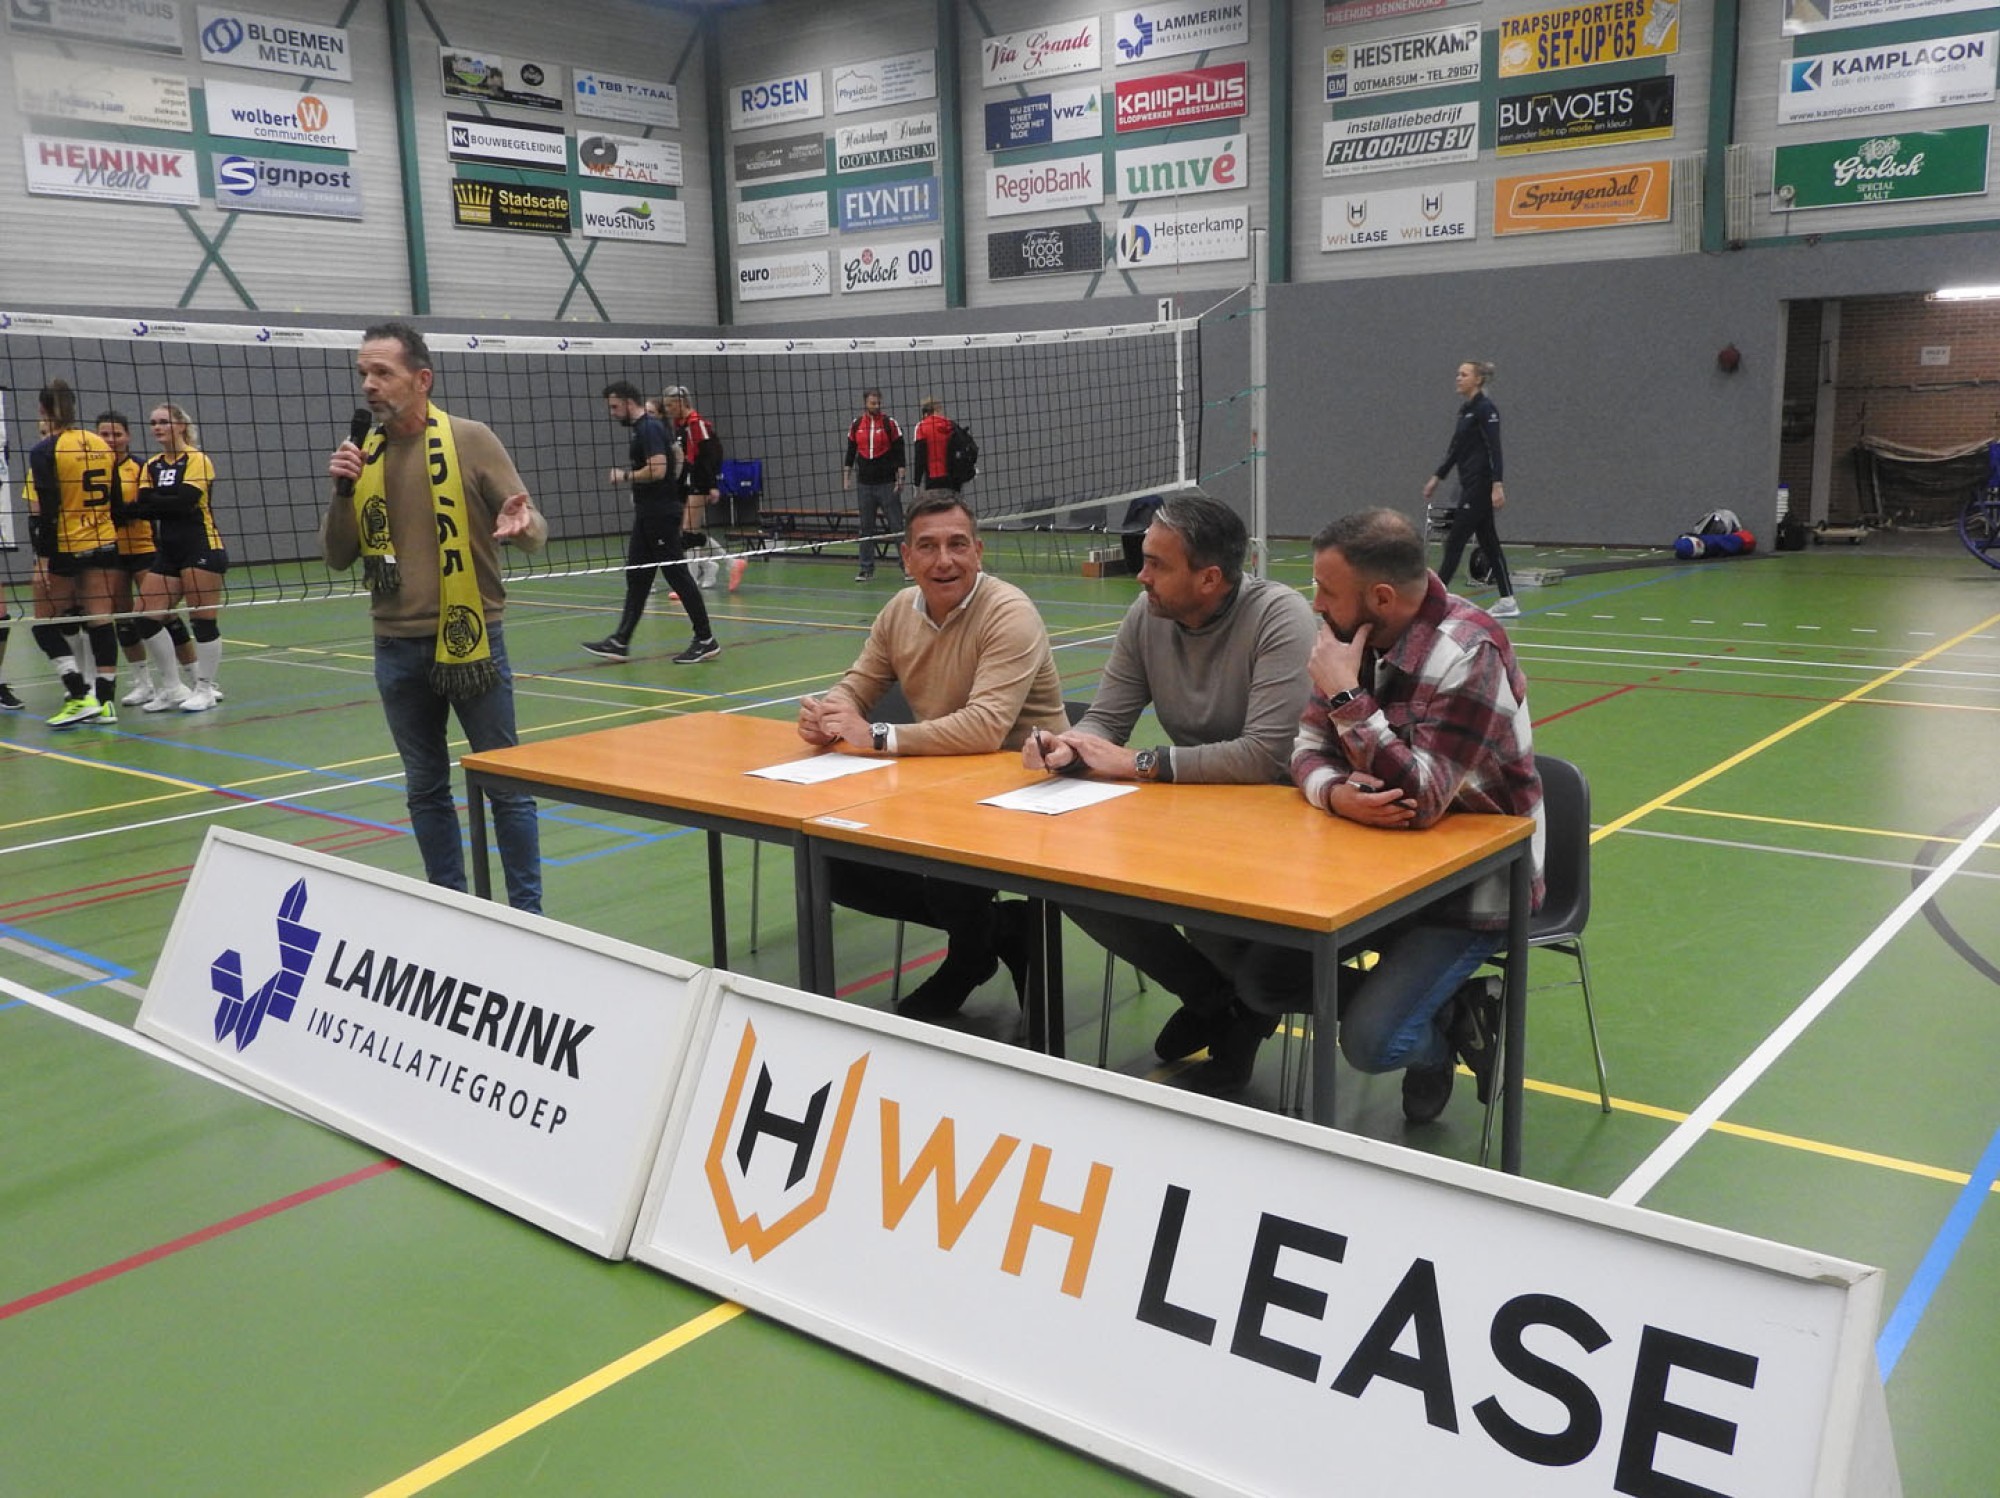 Lammerink en WH lease Heisterkamp verlengen contract